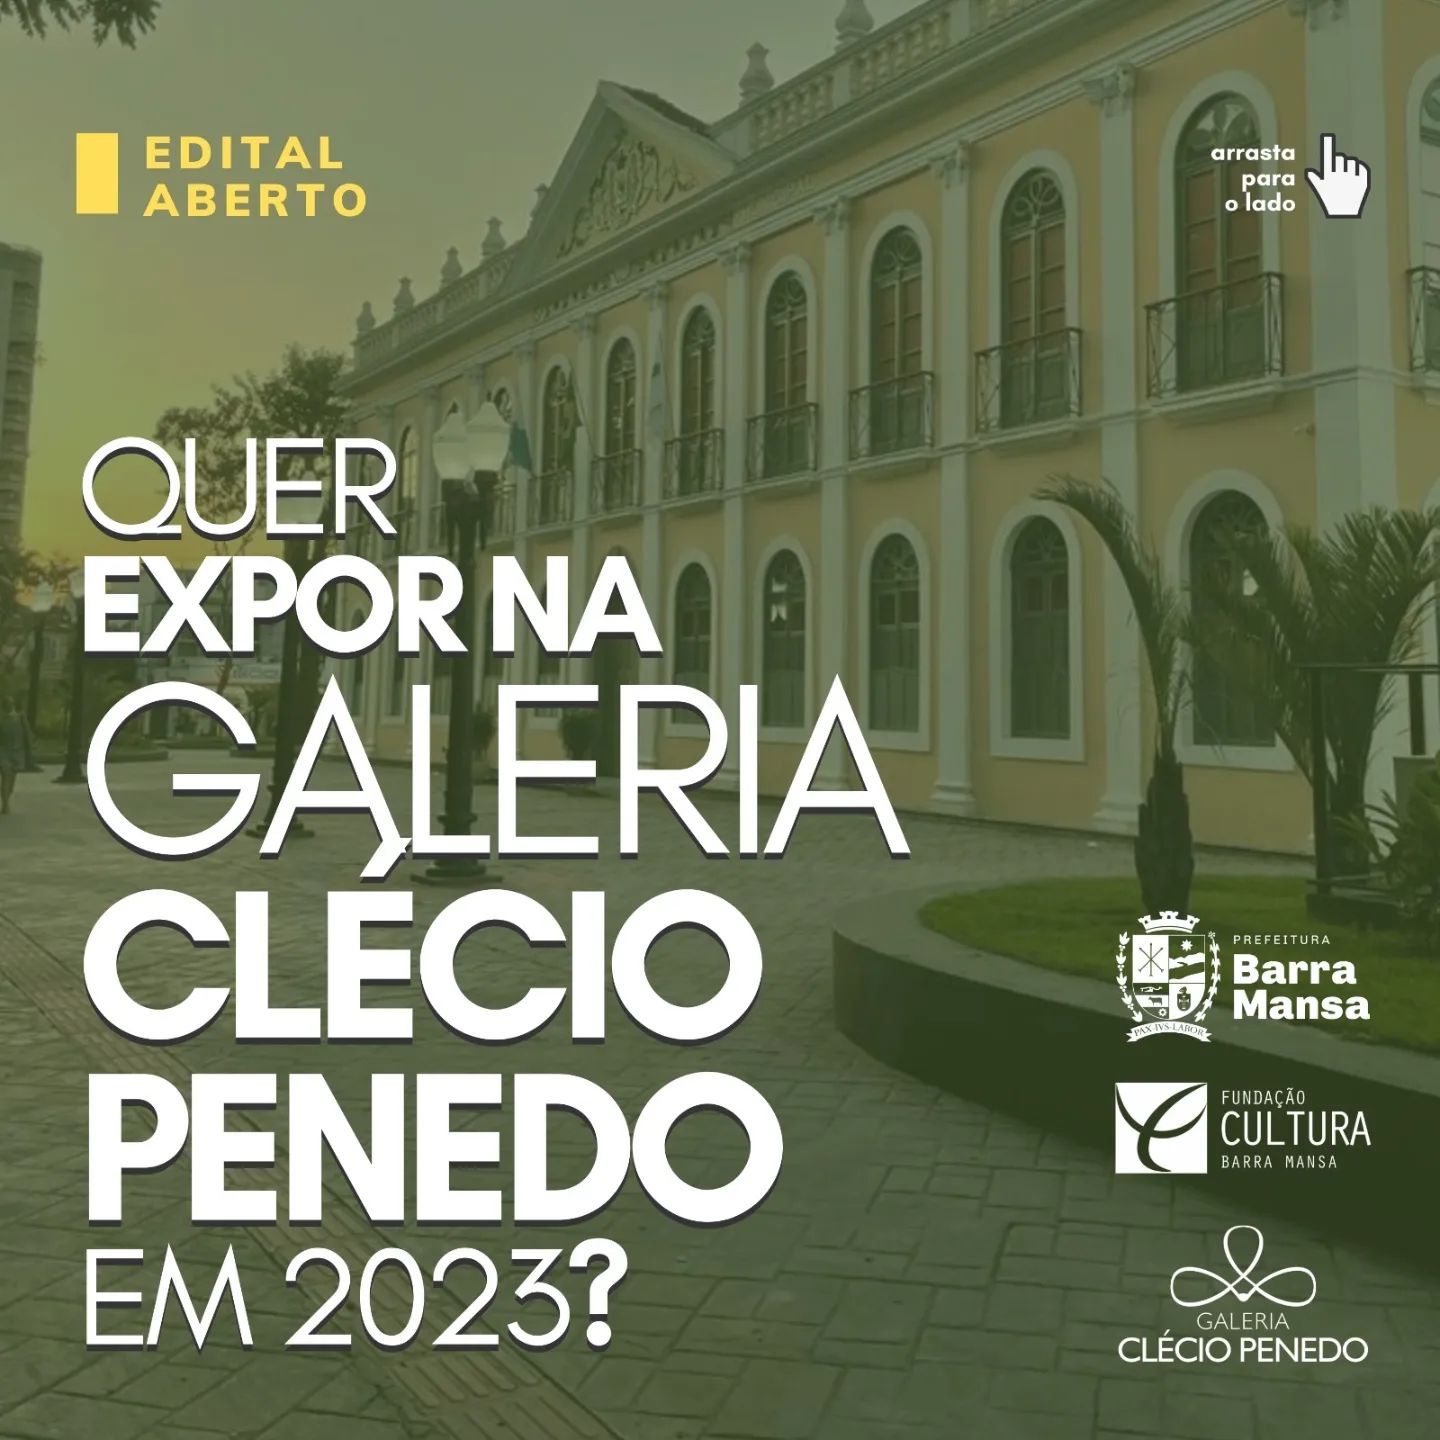 Fundação Cultura de Barra Mansa abre edital para exposição na Galeria Clécio Penedo